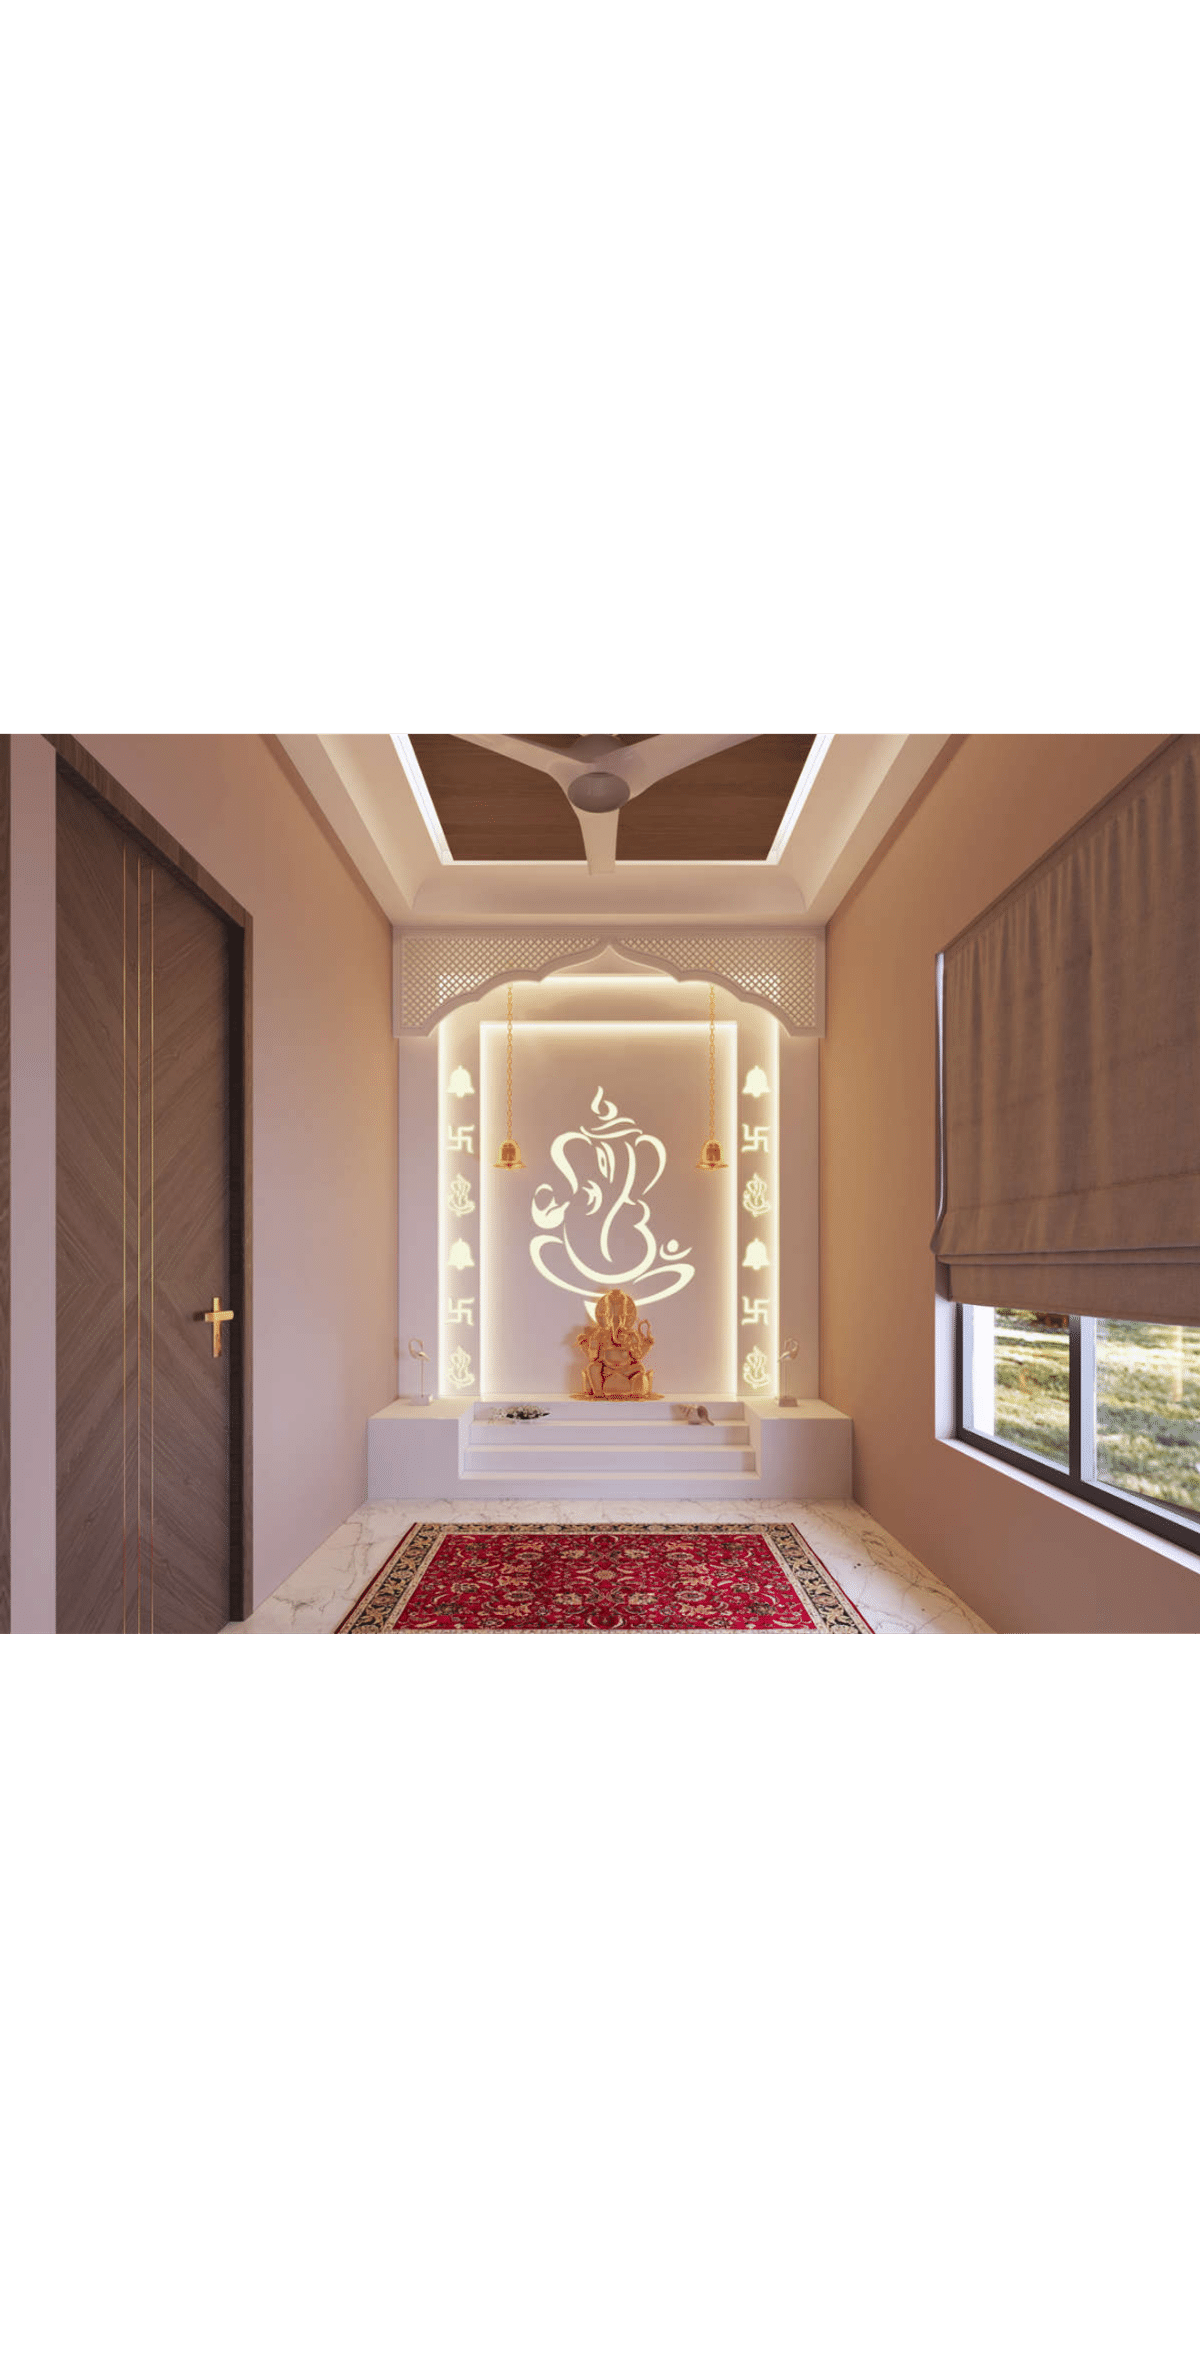 Lighting, Storage, Window, Prayer Room, Door Designs by Civil Engineer Shivraj Singh, Alwar | Kolo